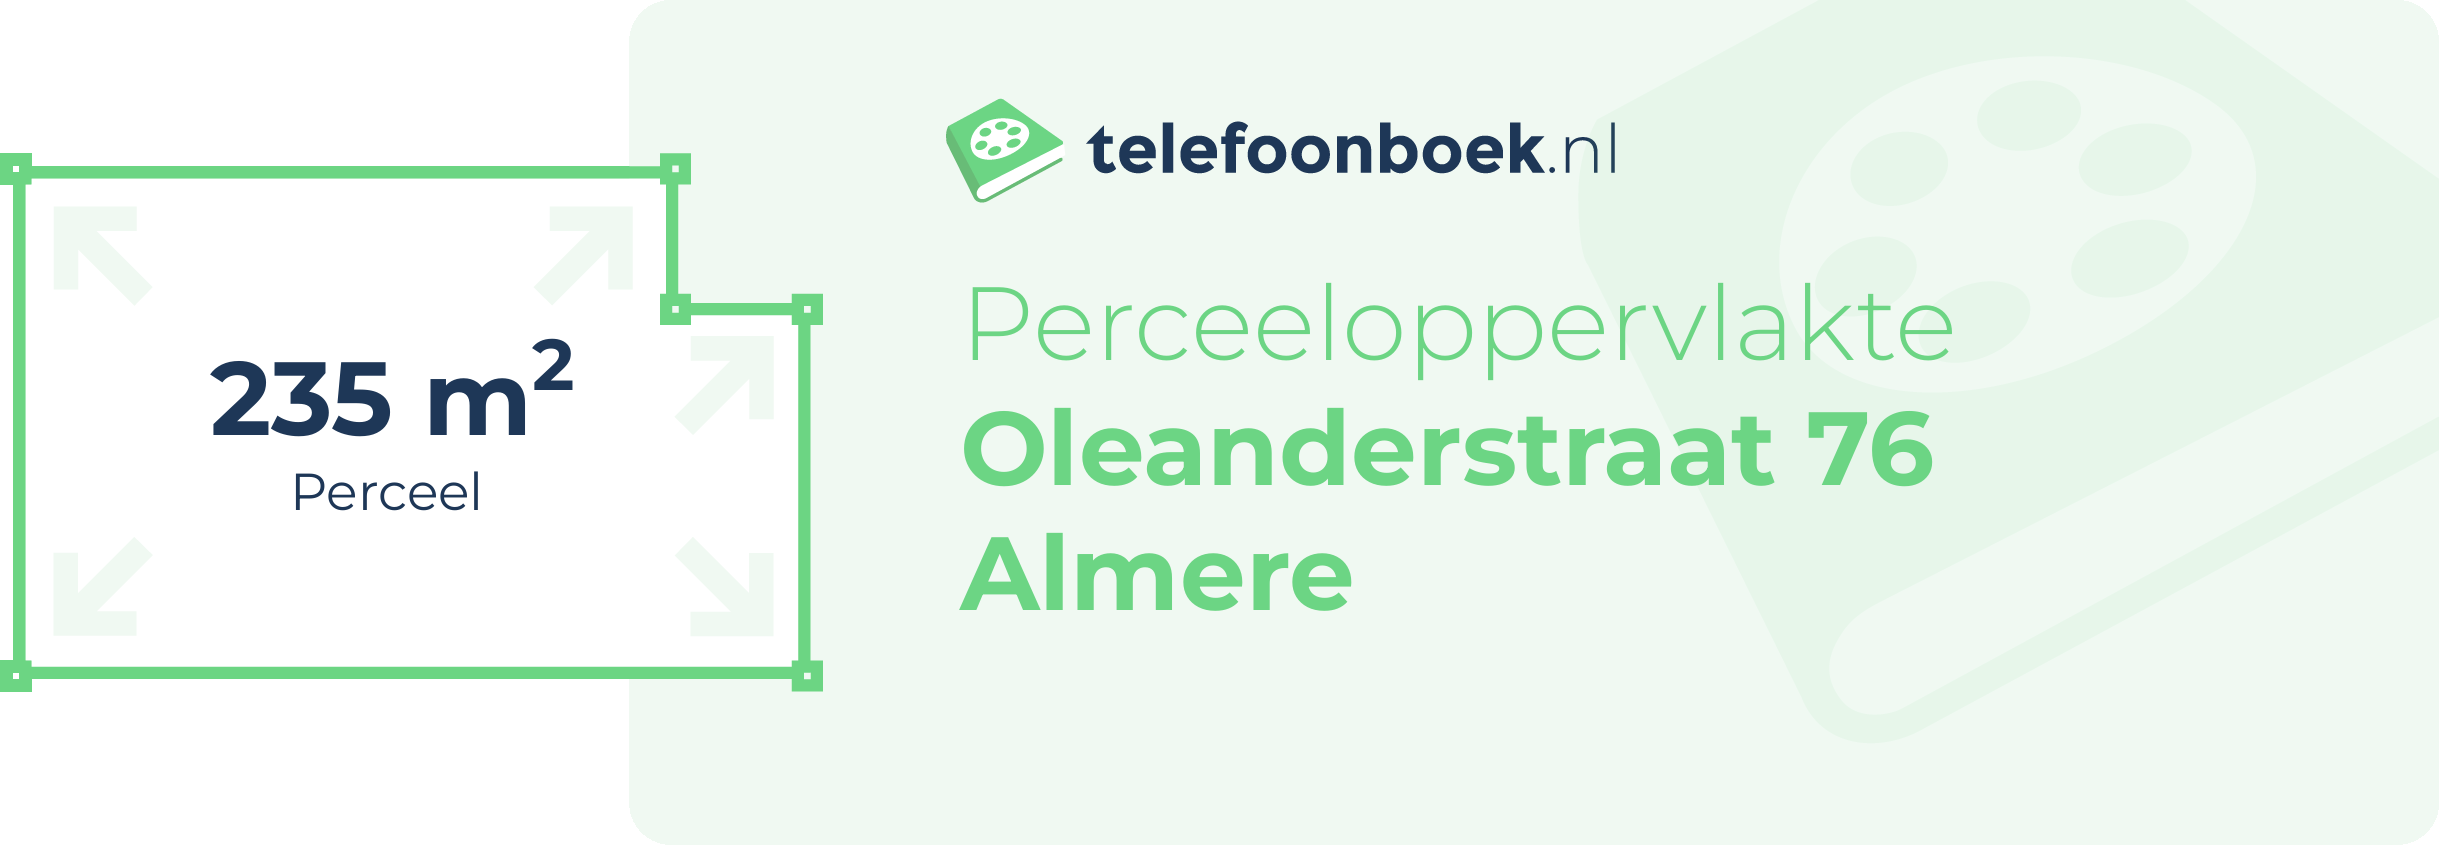 Perceeloppervlakte Oleanderstraat 76 Almere